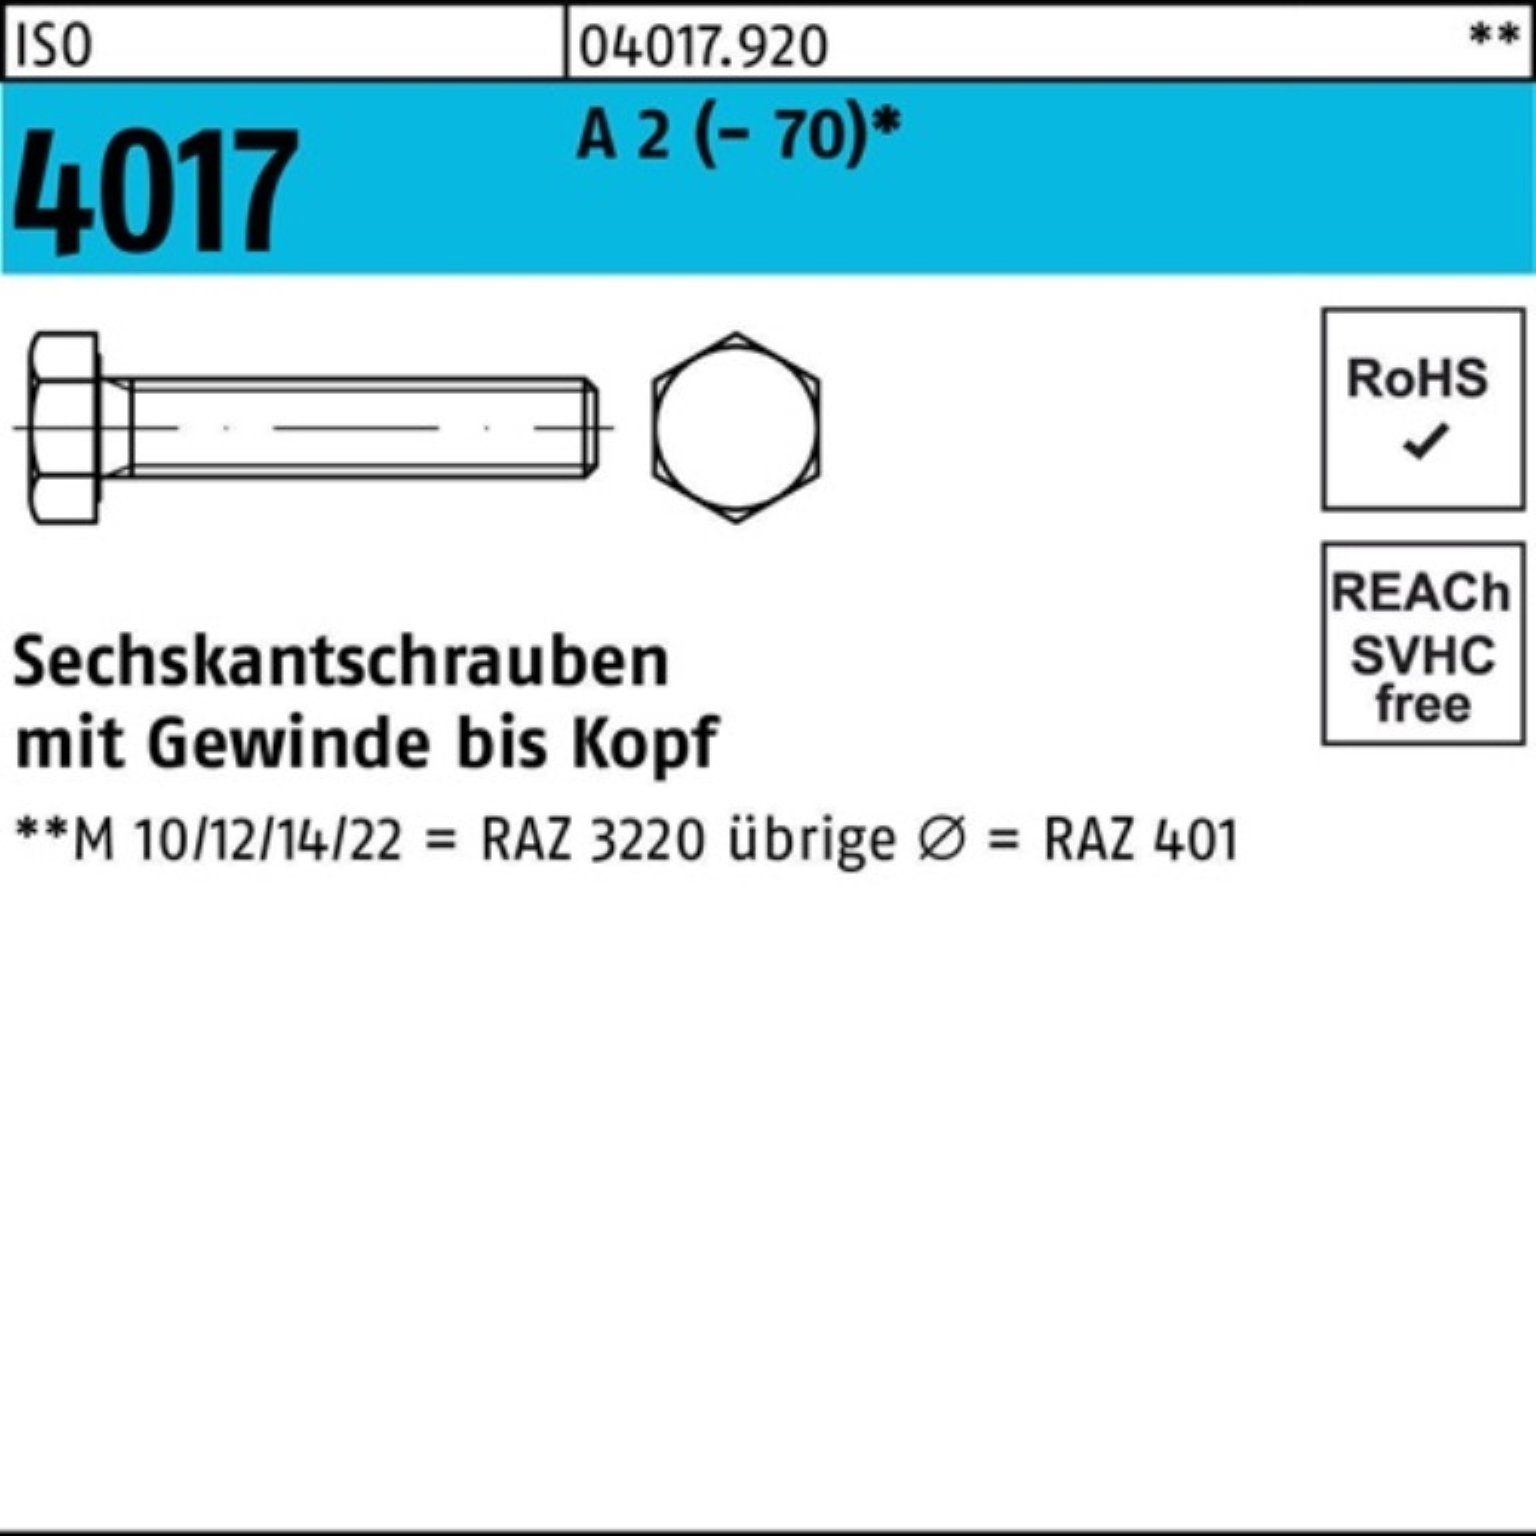 Bufab Sechskantschraube 4017 (70) 75 ISO Stück A 100er Pack VG M16x 2 Sechskantschraube 25